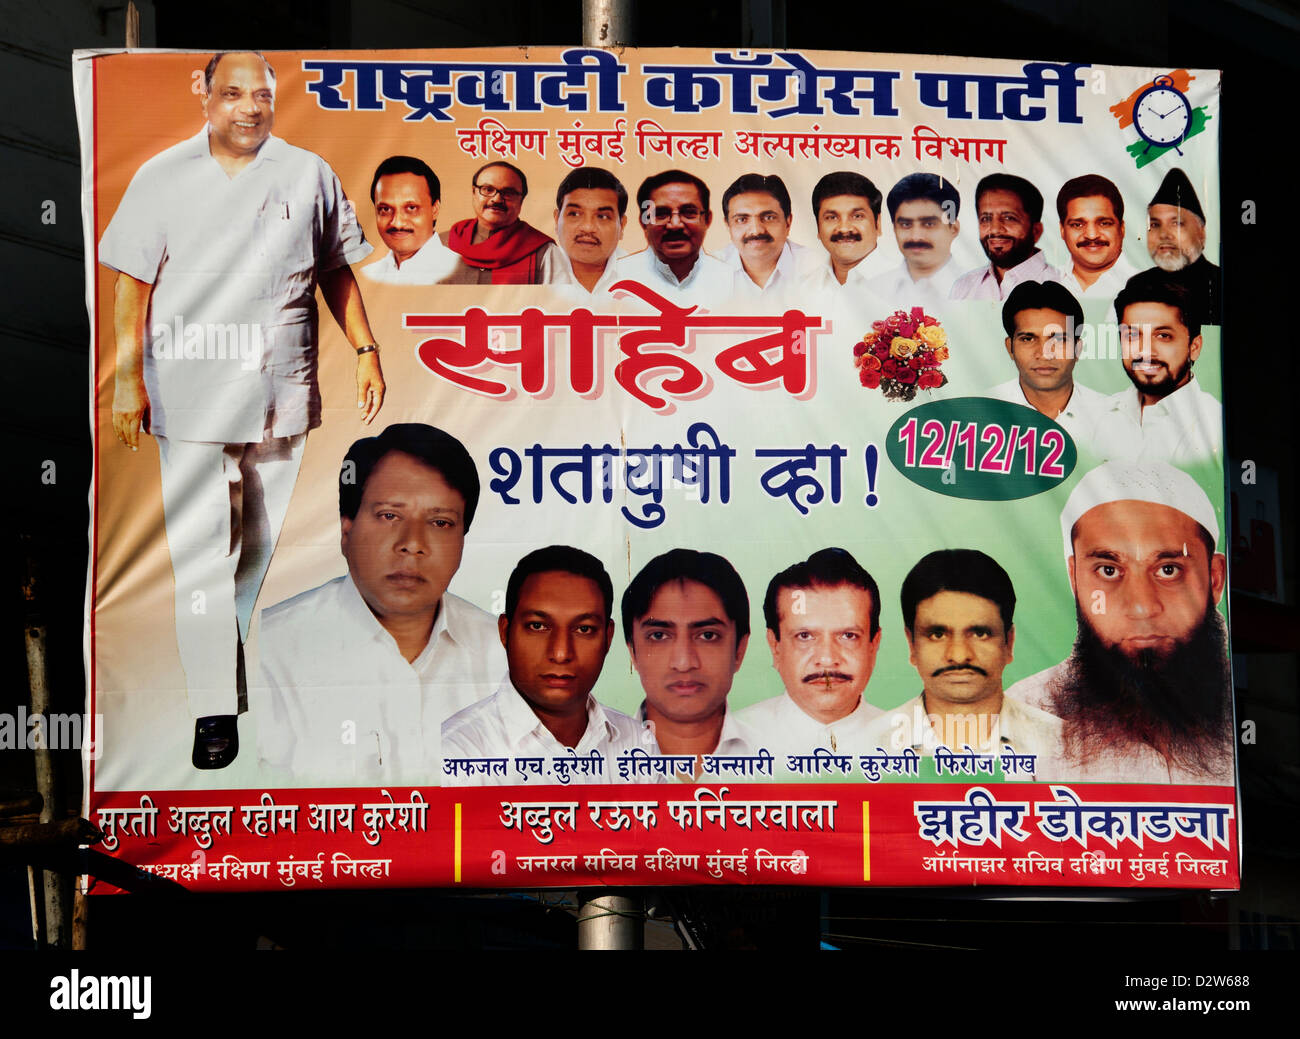 Mumbai Inde Indian politique politicienne de l'affiche de la campagne électorale, les sondages sondages Sondage vote tour signer billboard Banque D'Images